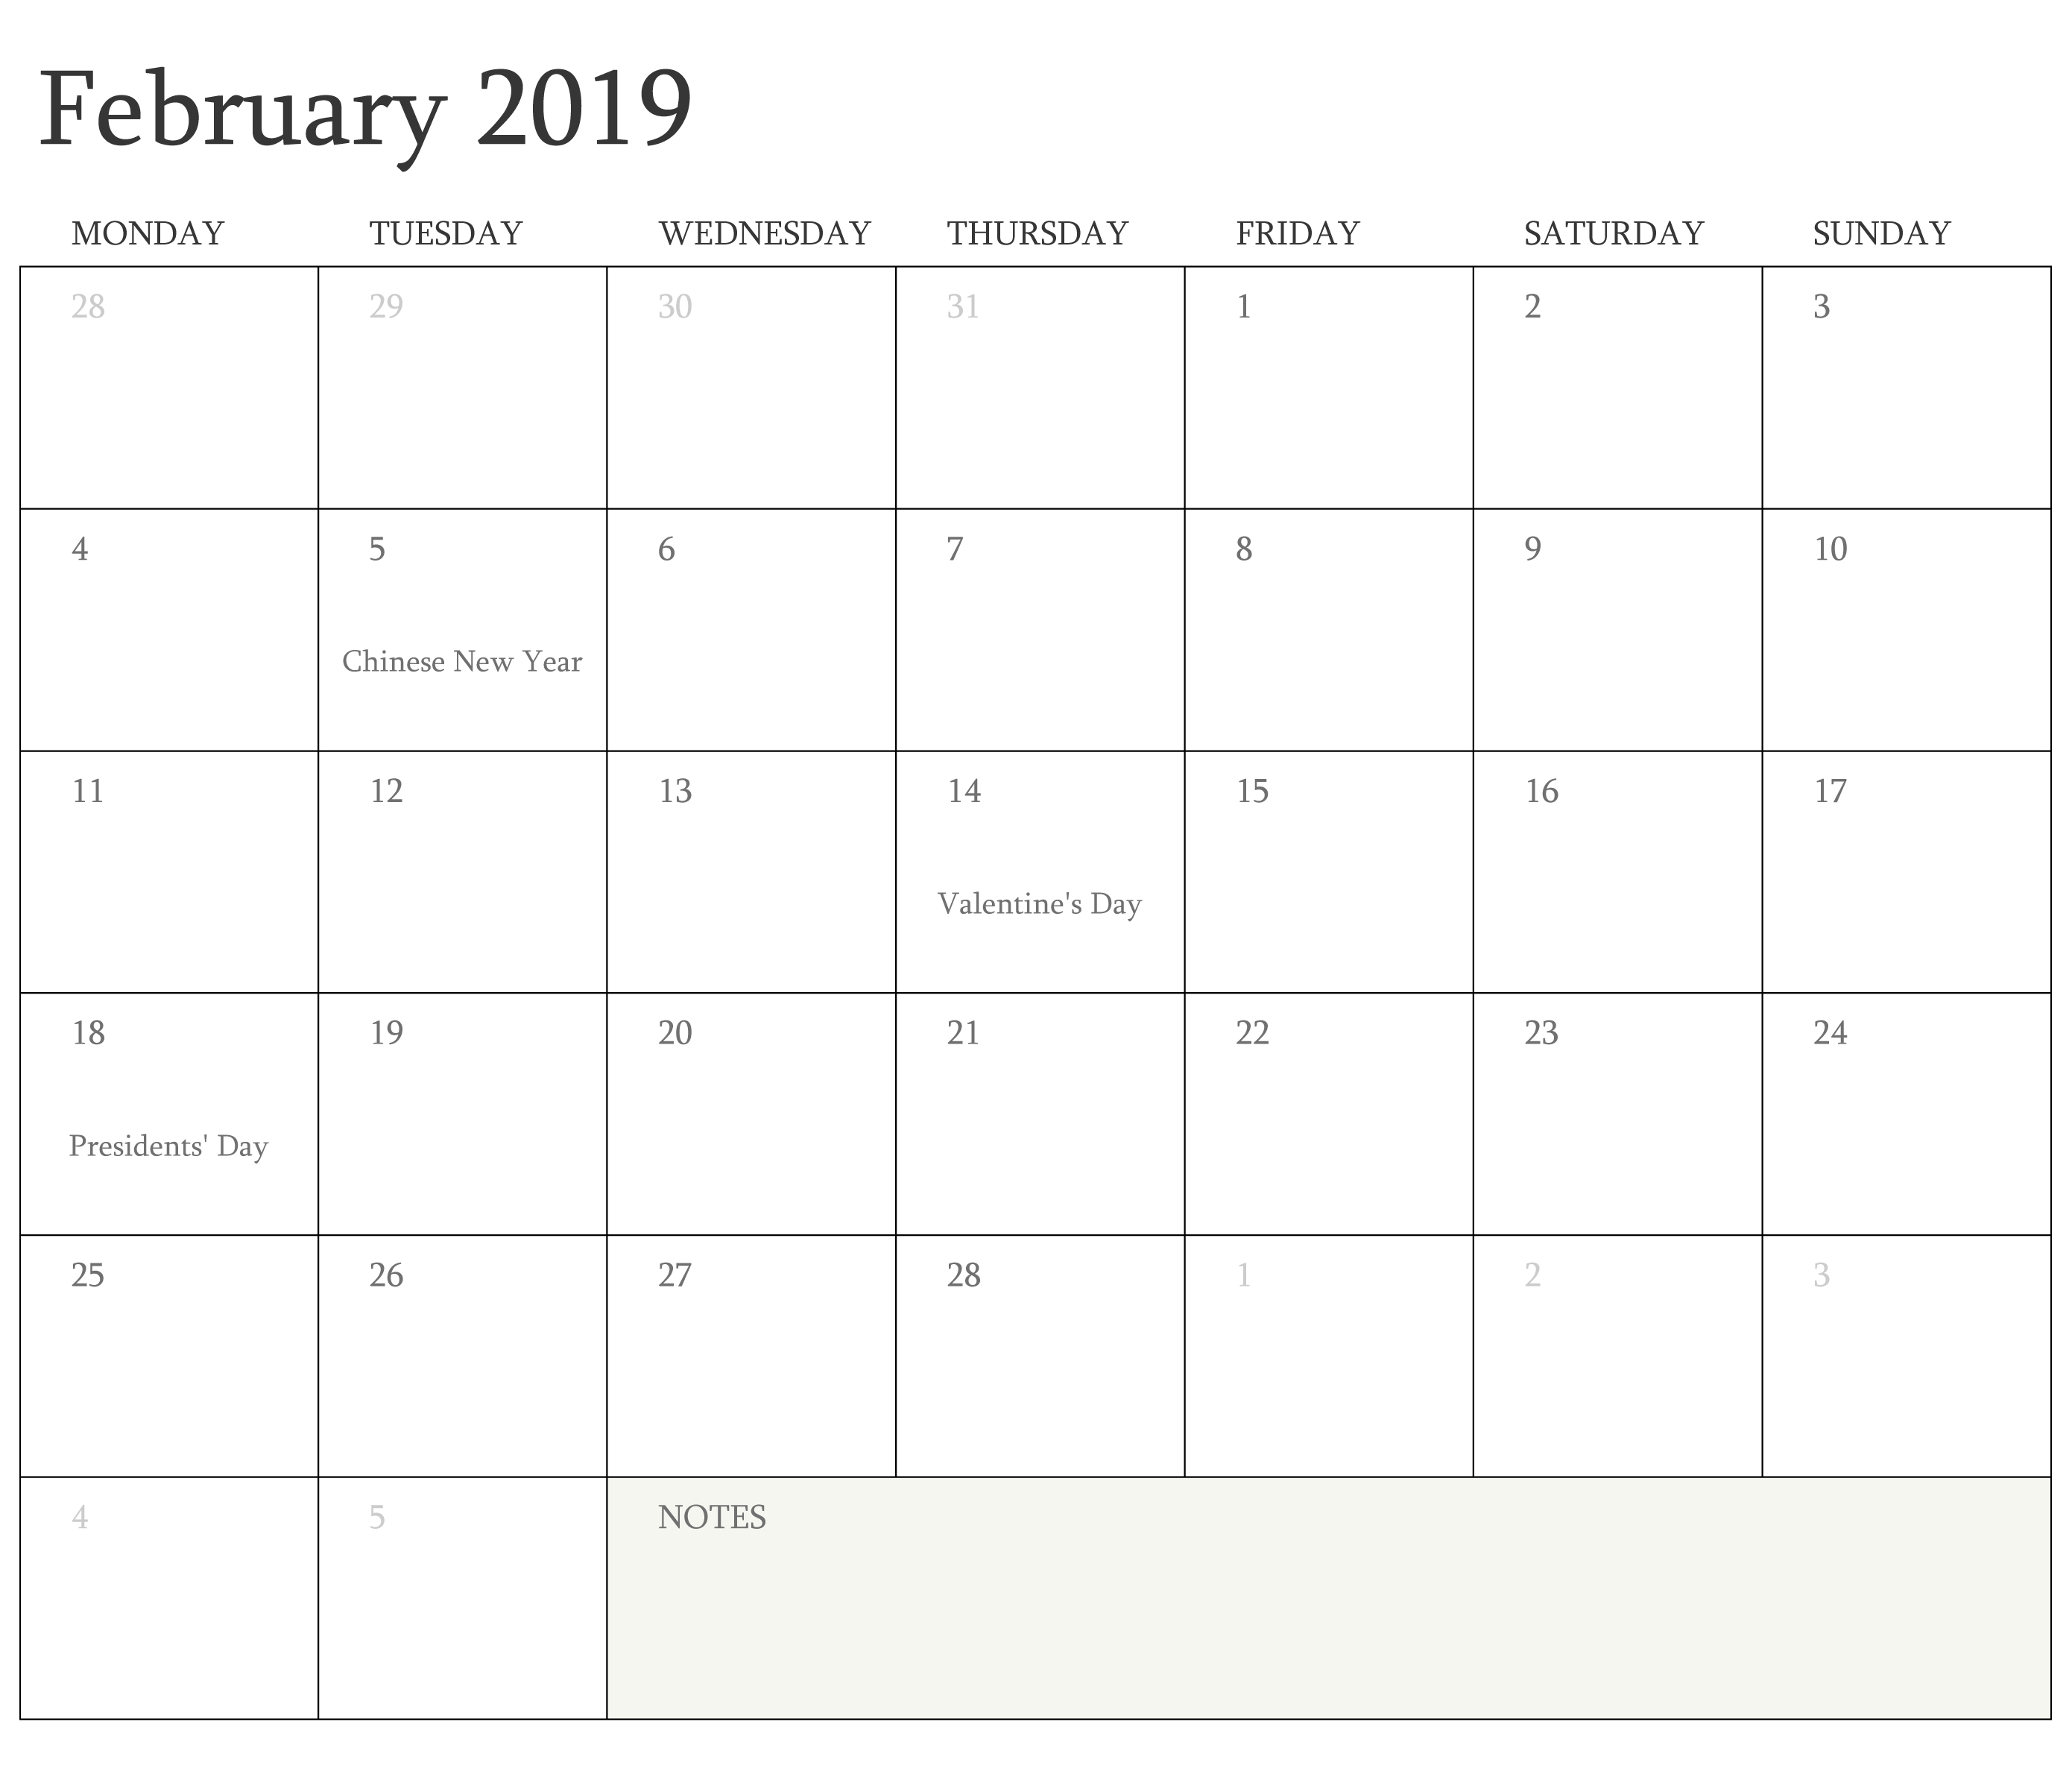 calendar-february-2019-with-holidays-qualads